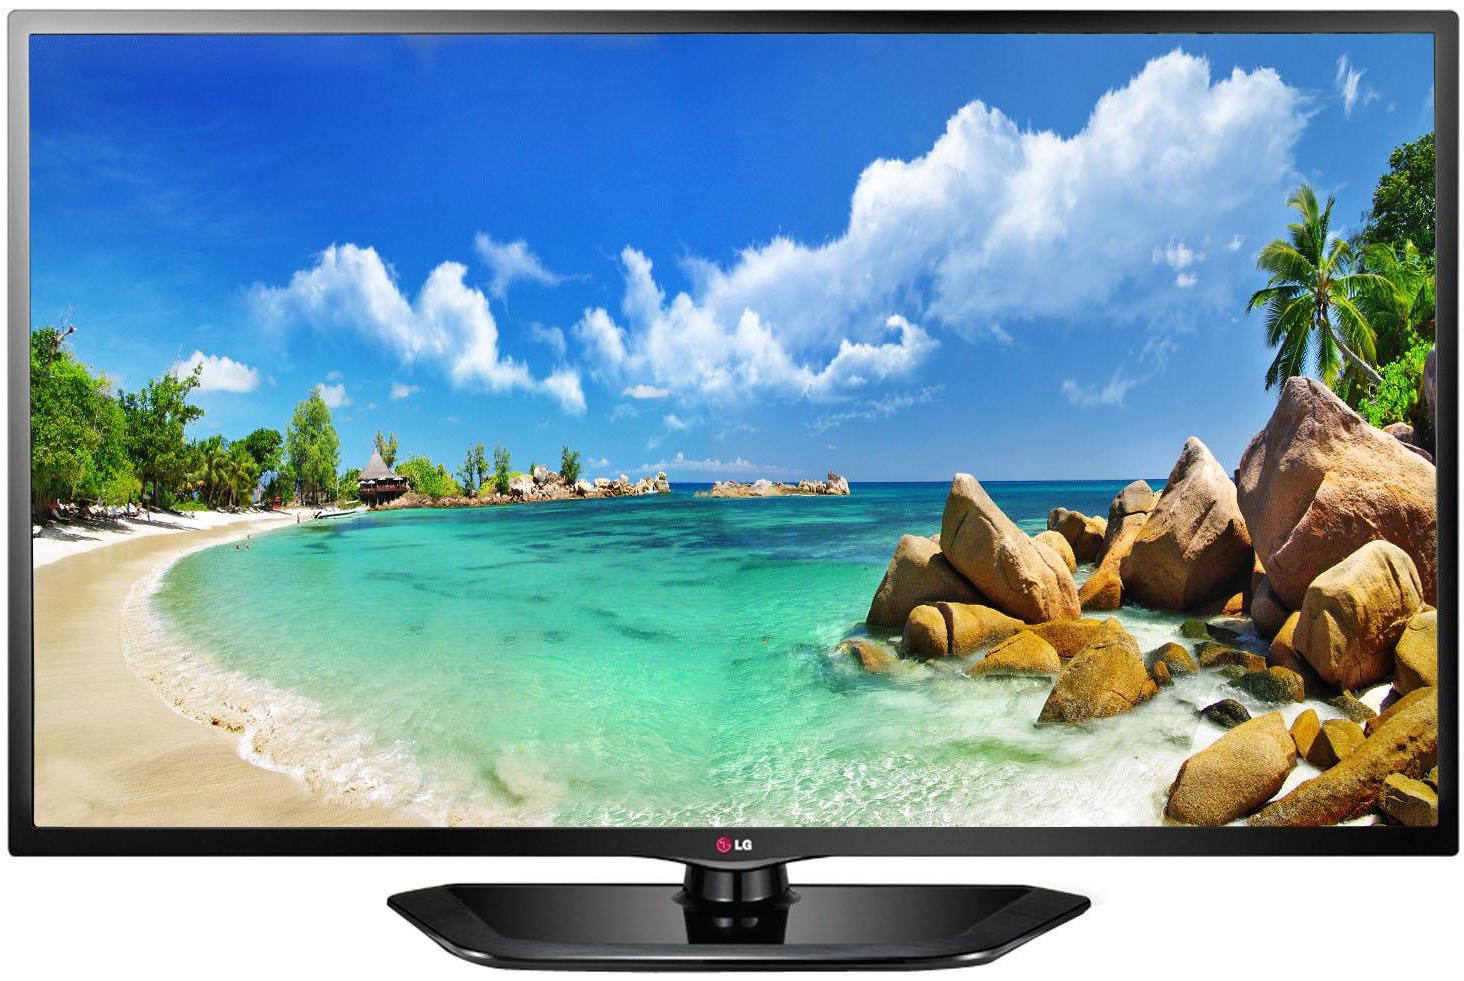 Телевизор LG 32ln541u. LG 42ln540v. LG 32ln542v. 42ln540v LG TV.